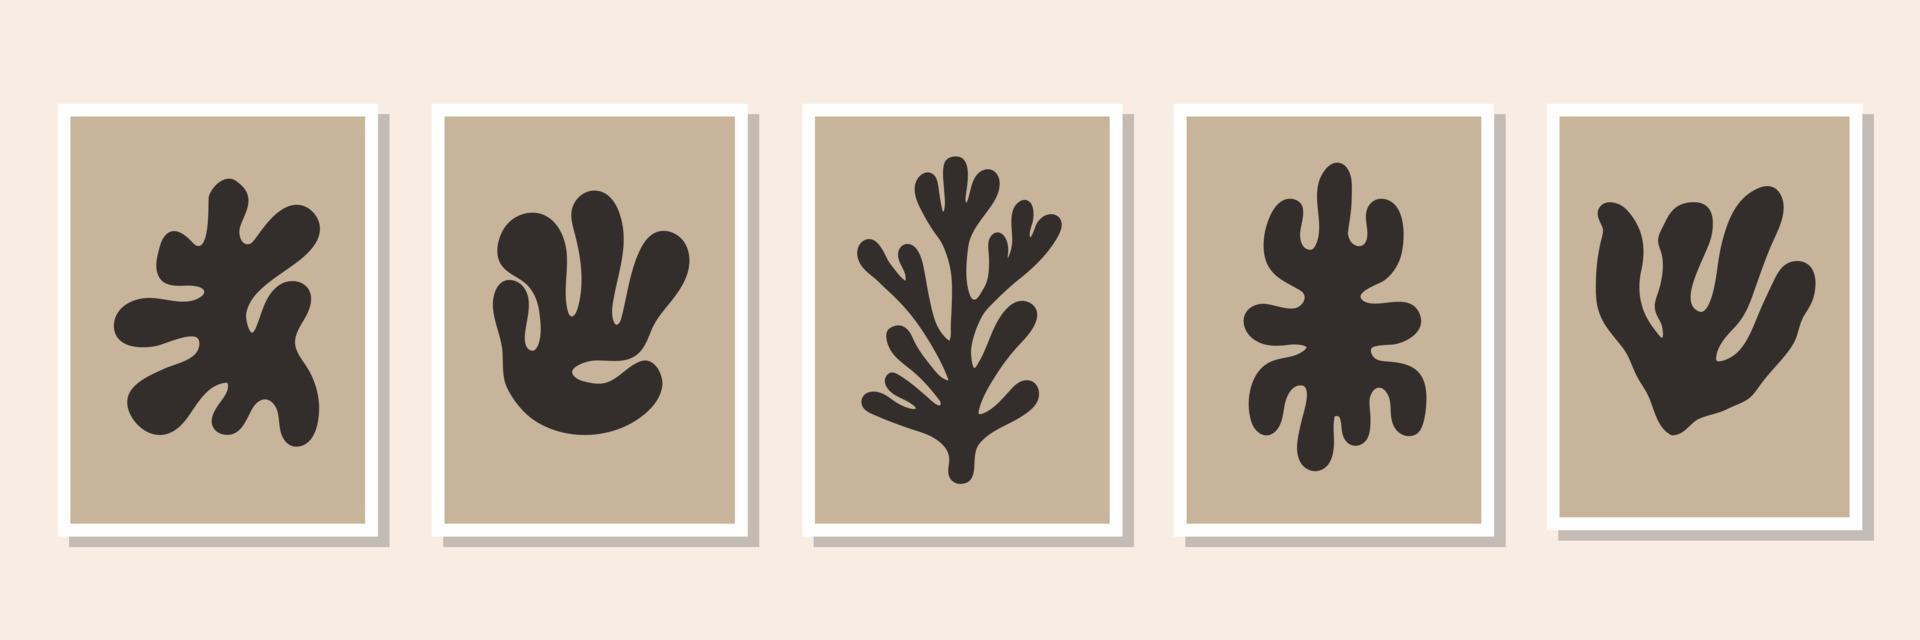 abstracte set van minimale posters met zwarte organische geometrische vormen. hedendaagse botanische vectorafdrukken vector